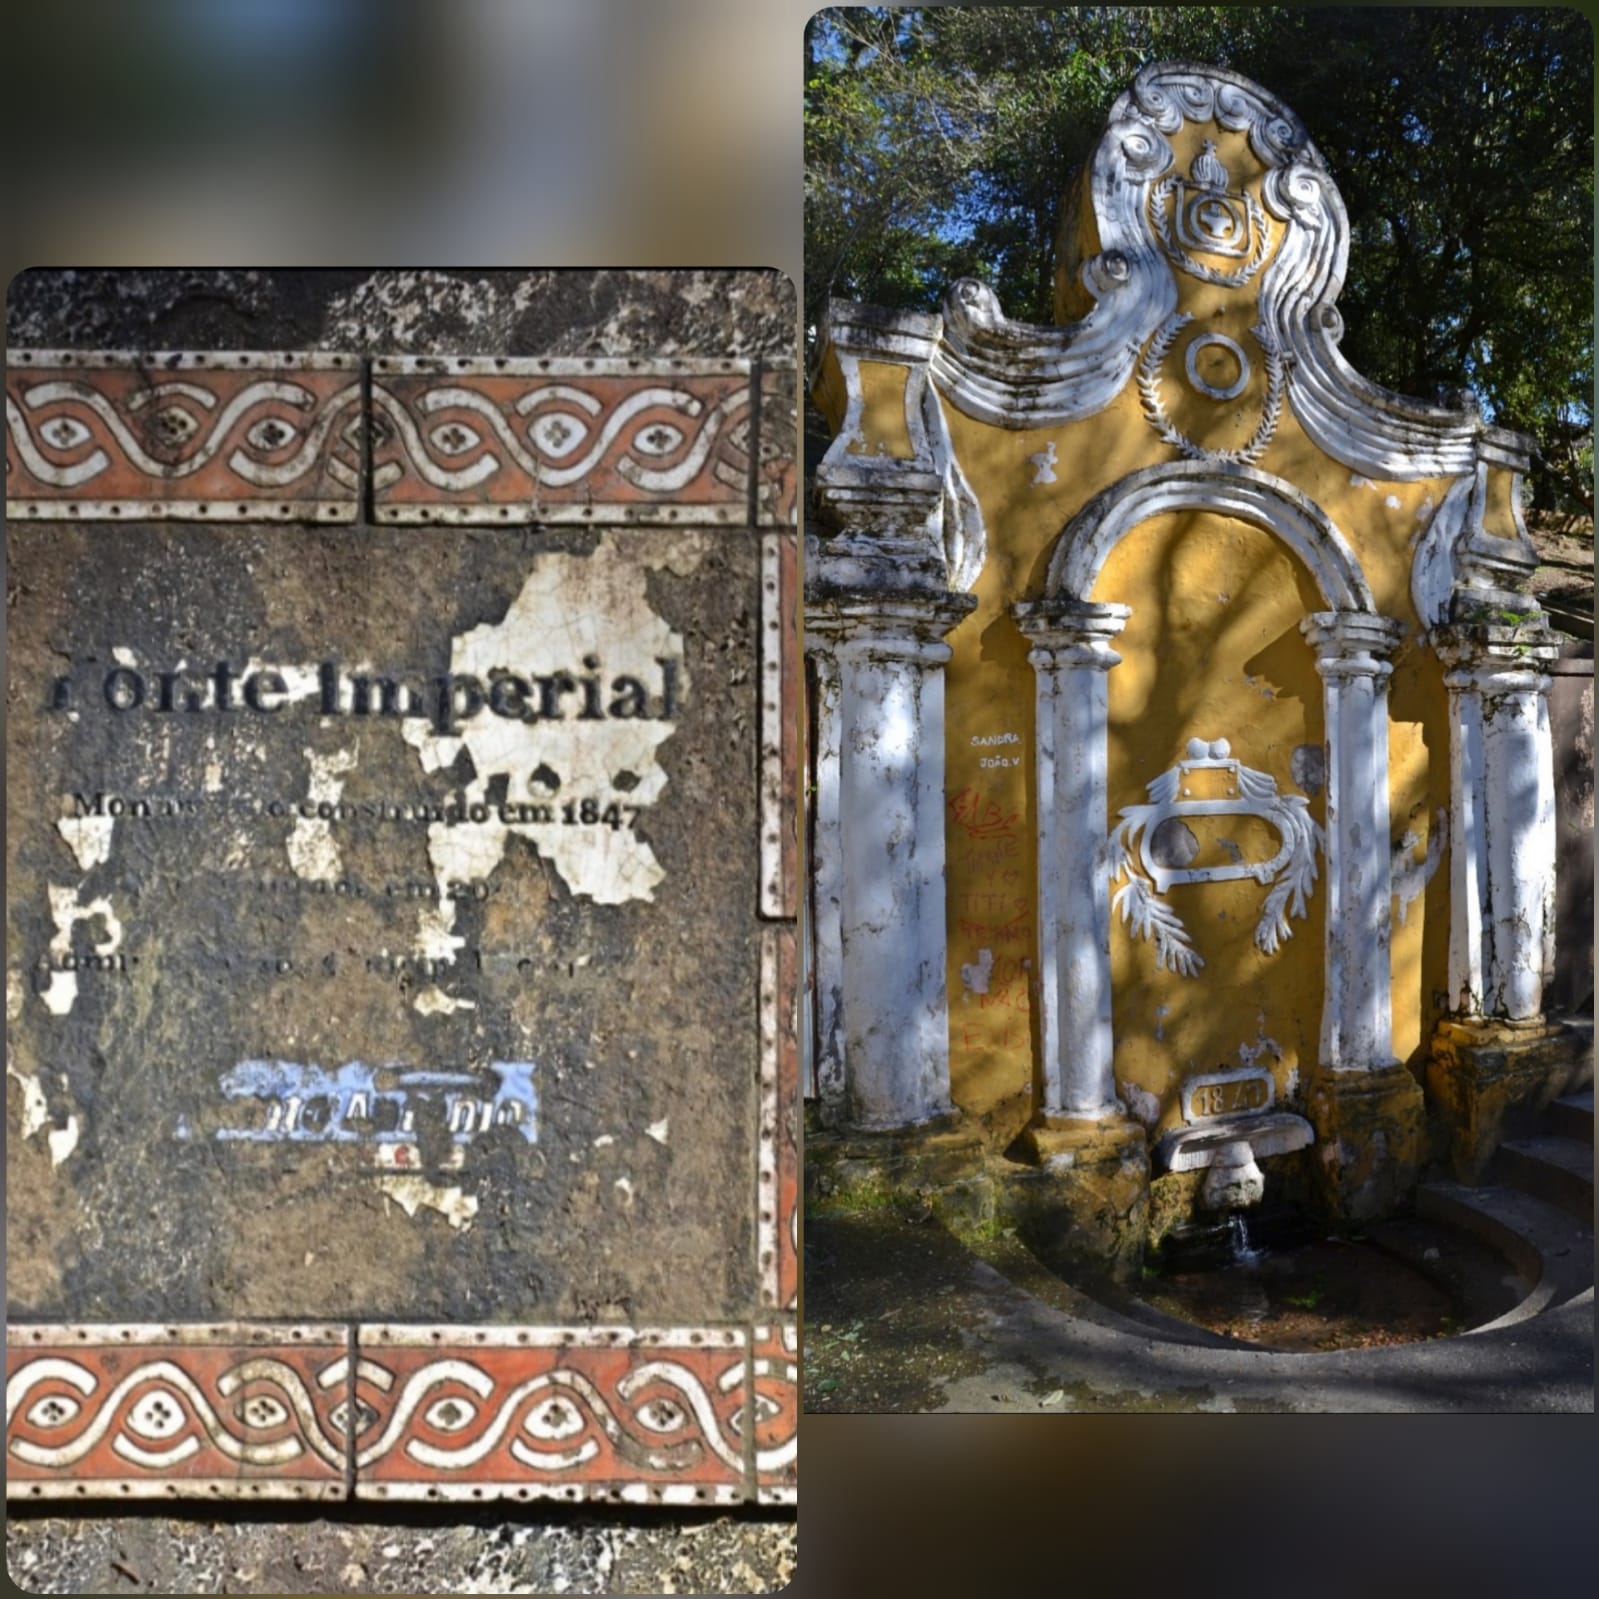 Bacana solicita limpeza e manutenção na Fonte Imperial, monumento histórico de Santo Antônio